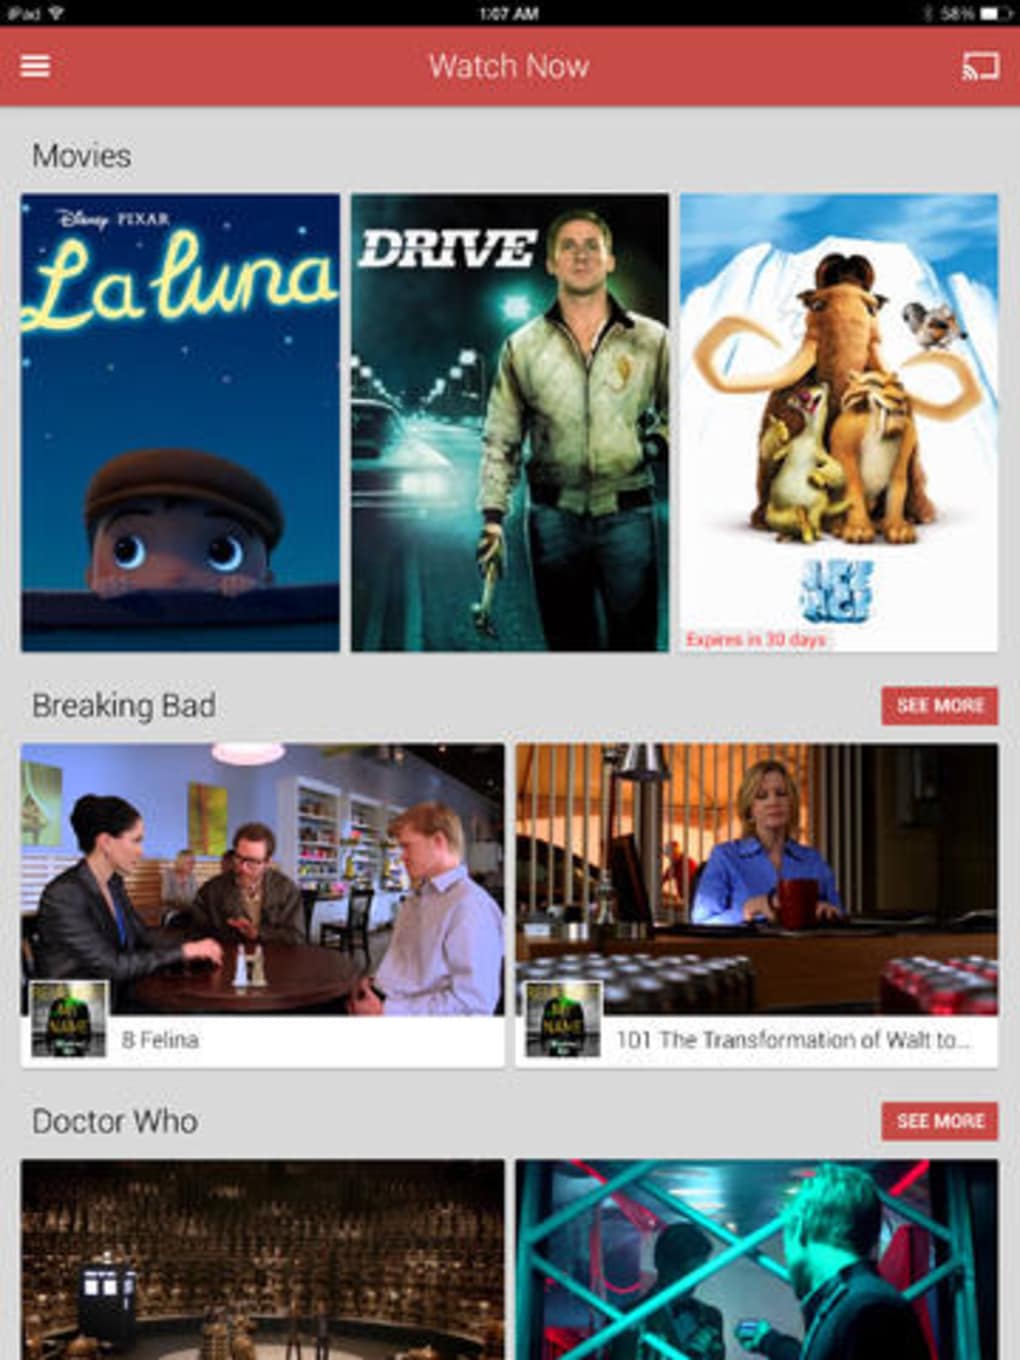 Ver filmes em Google Play Movies & TV 